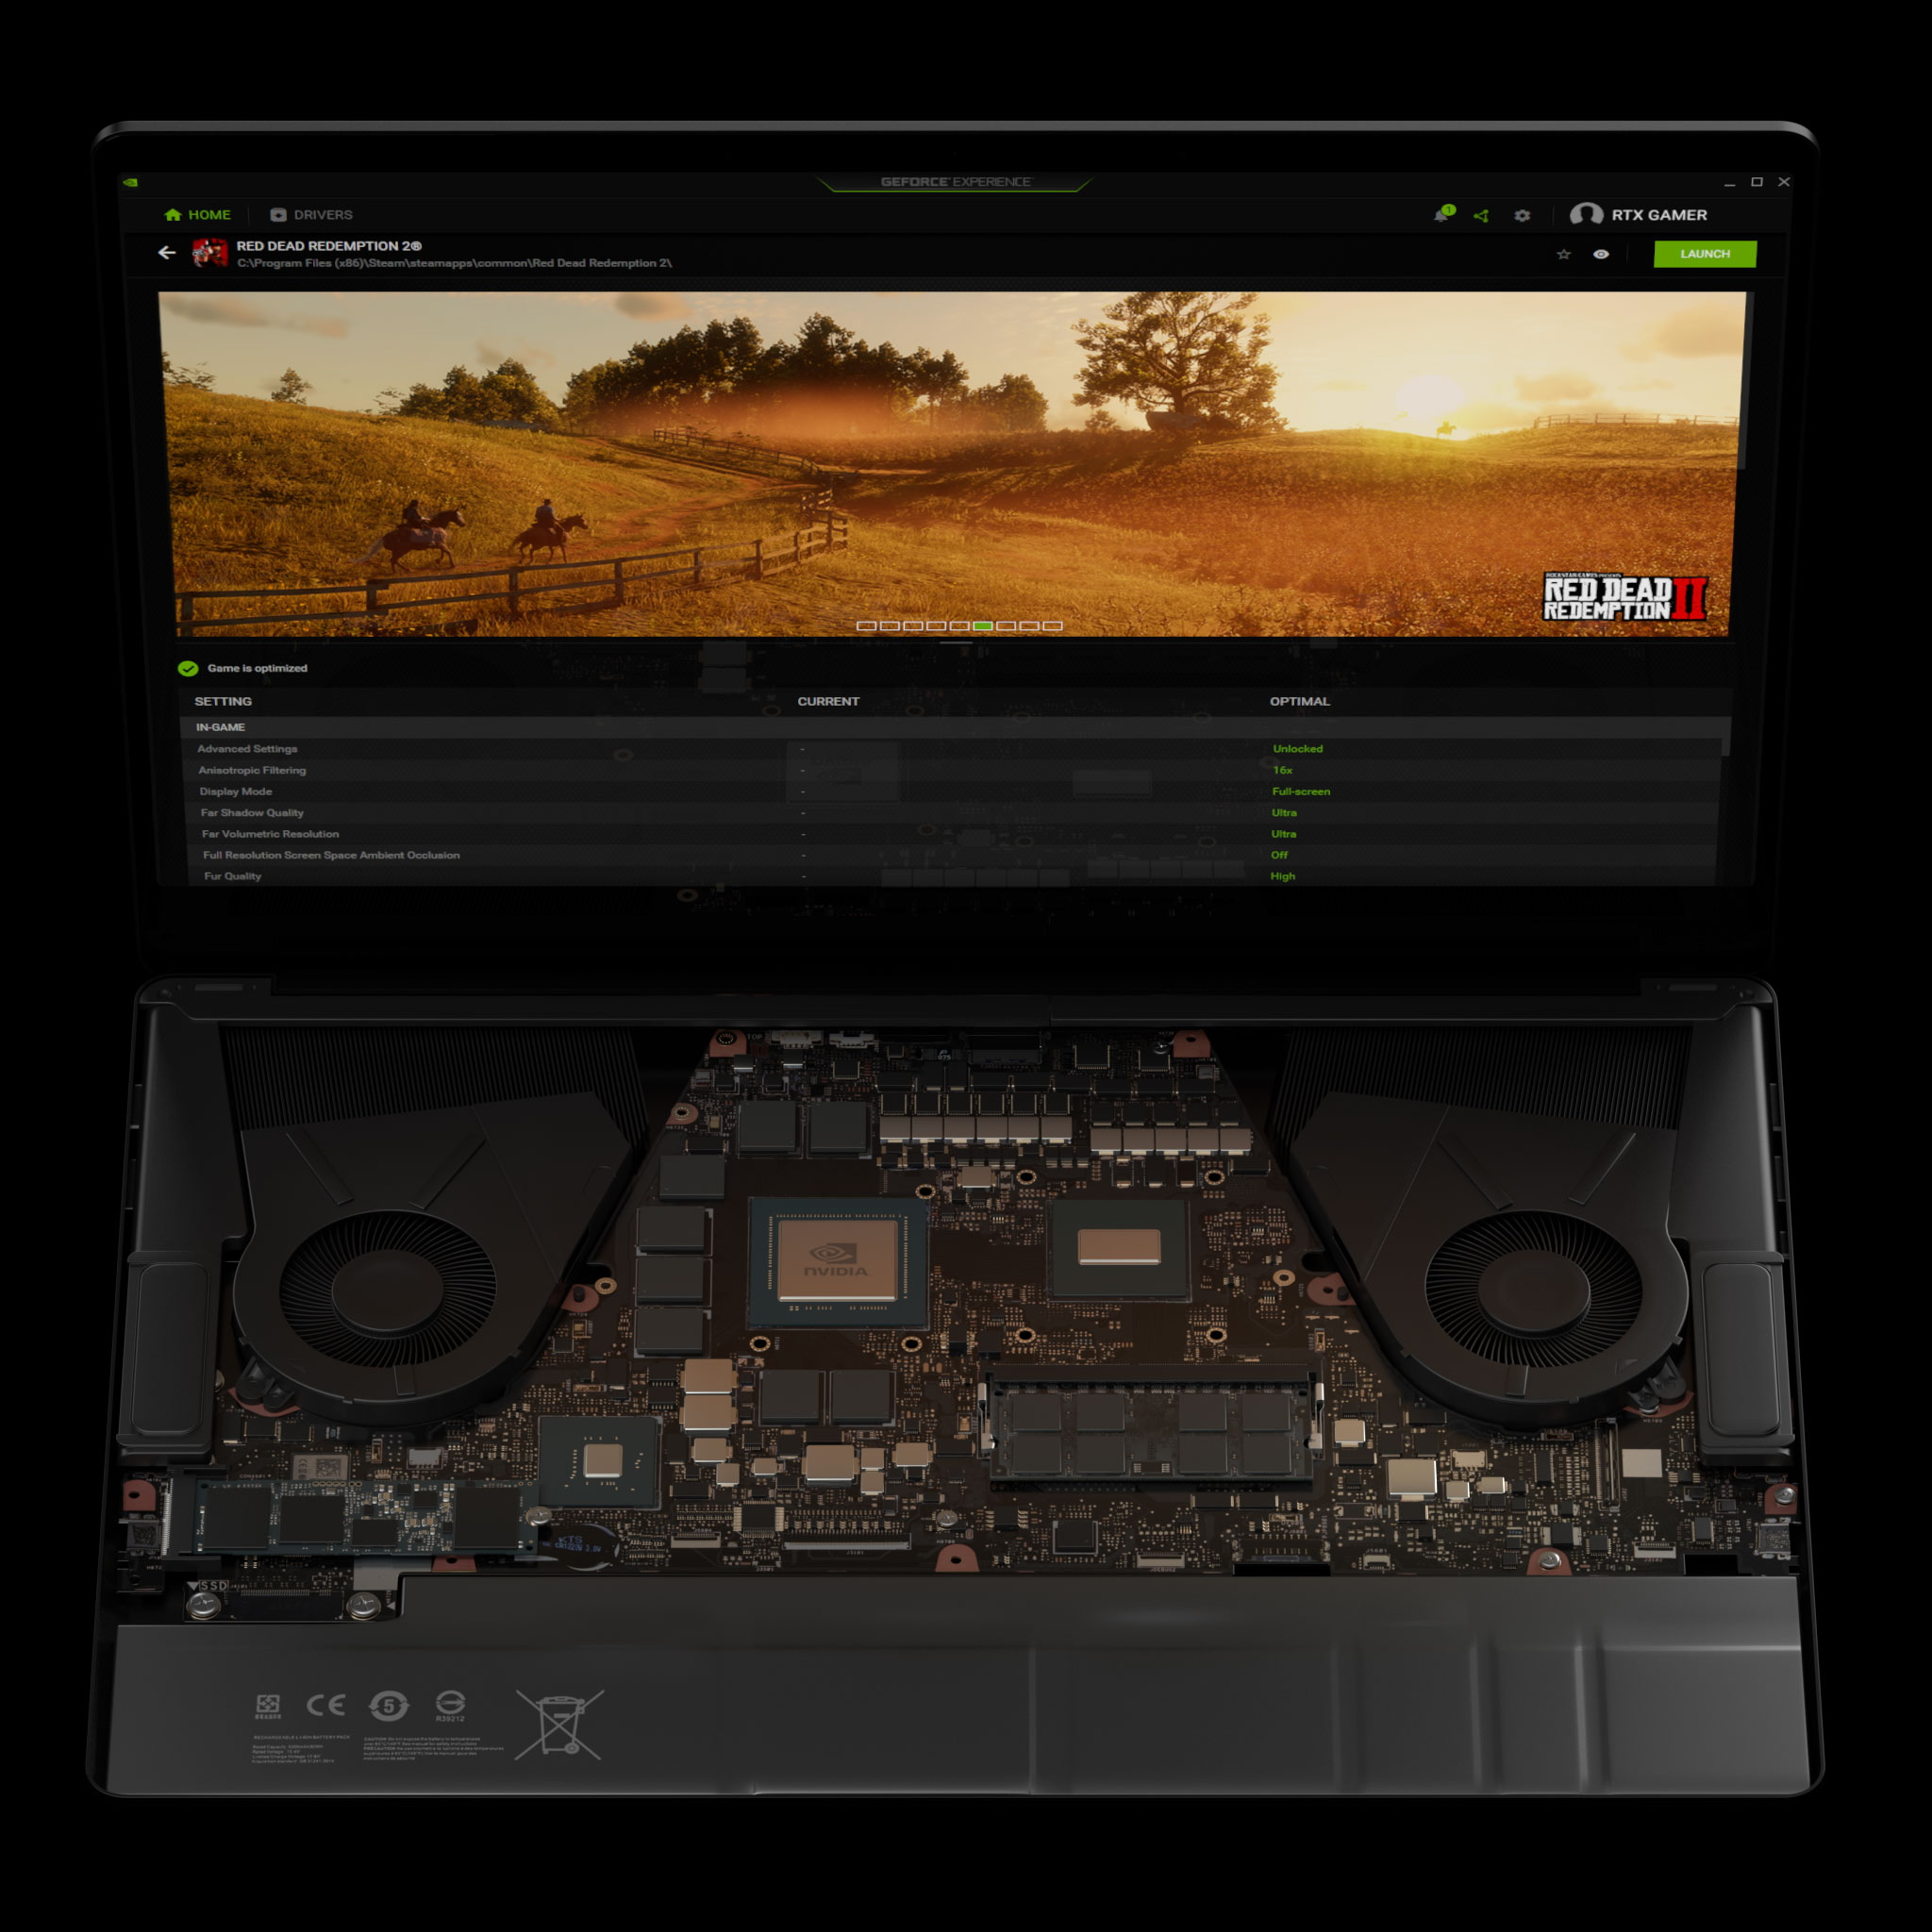 PC portable GeForce avec paramètres de jeu optimaux Max-Q dans GeForce Experience pour Red Dead Redemption 2